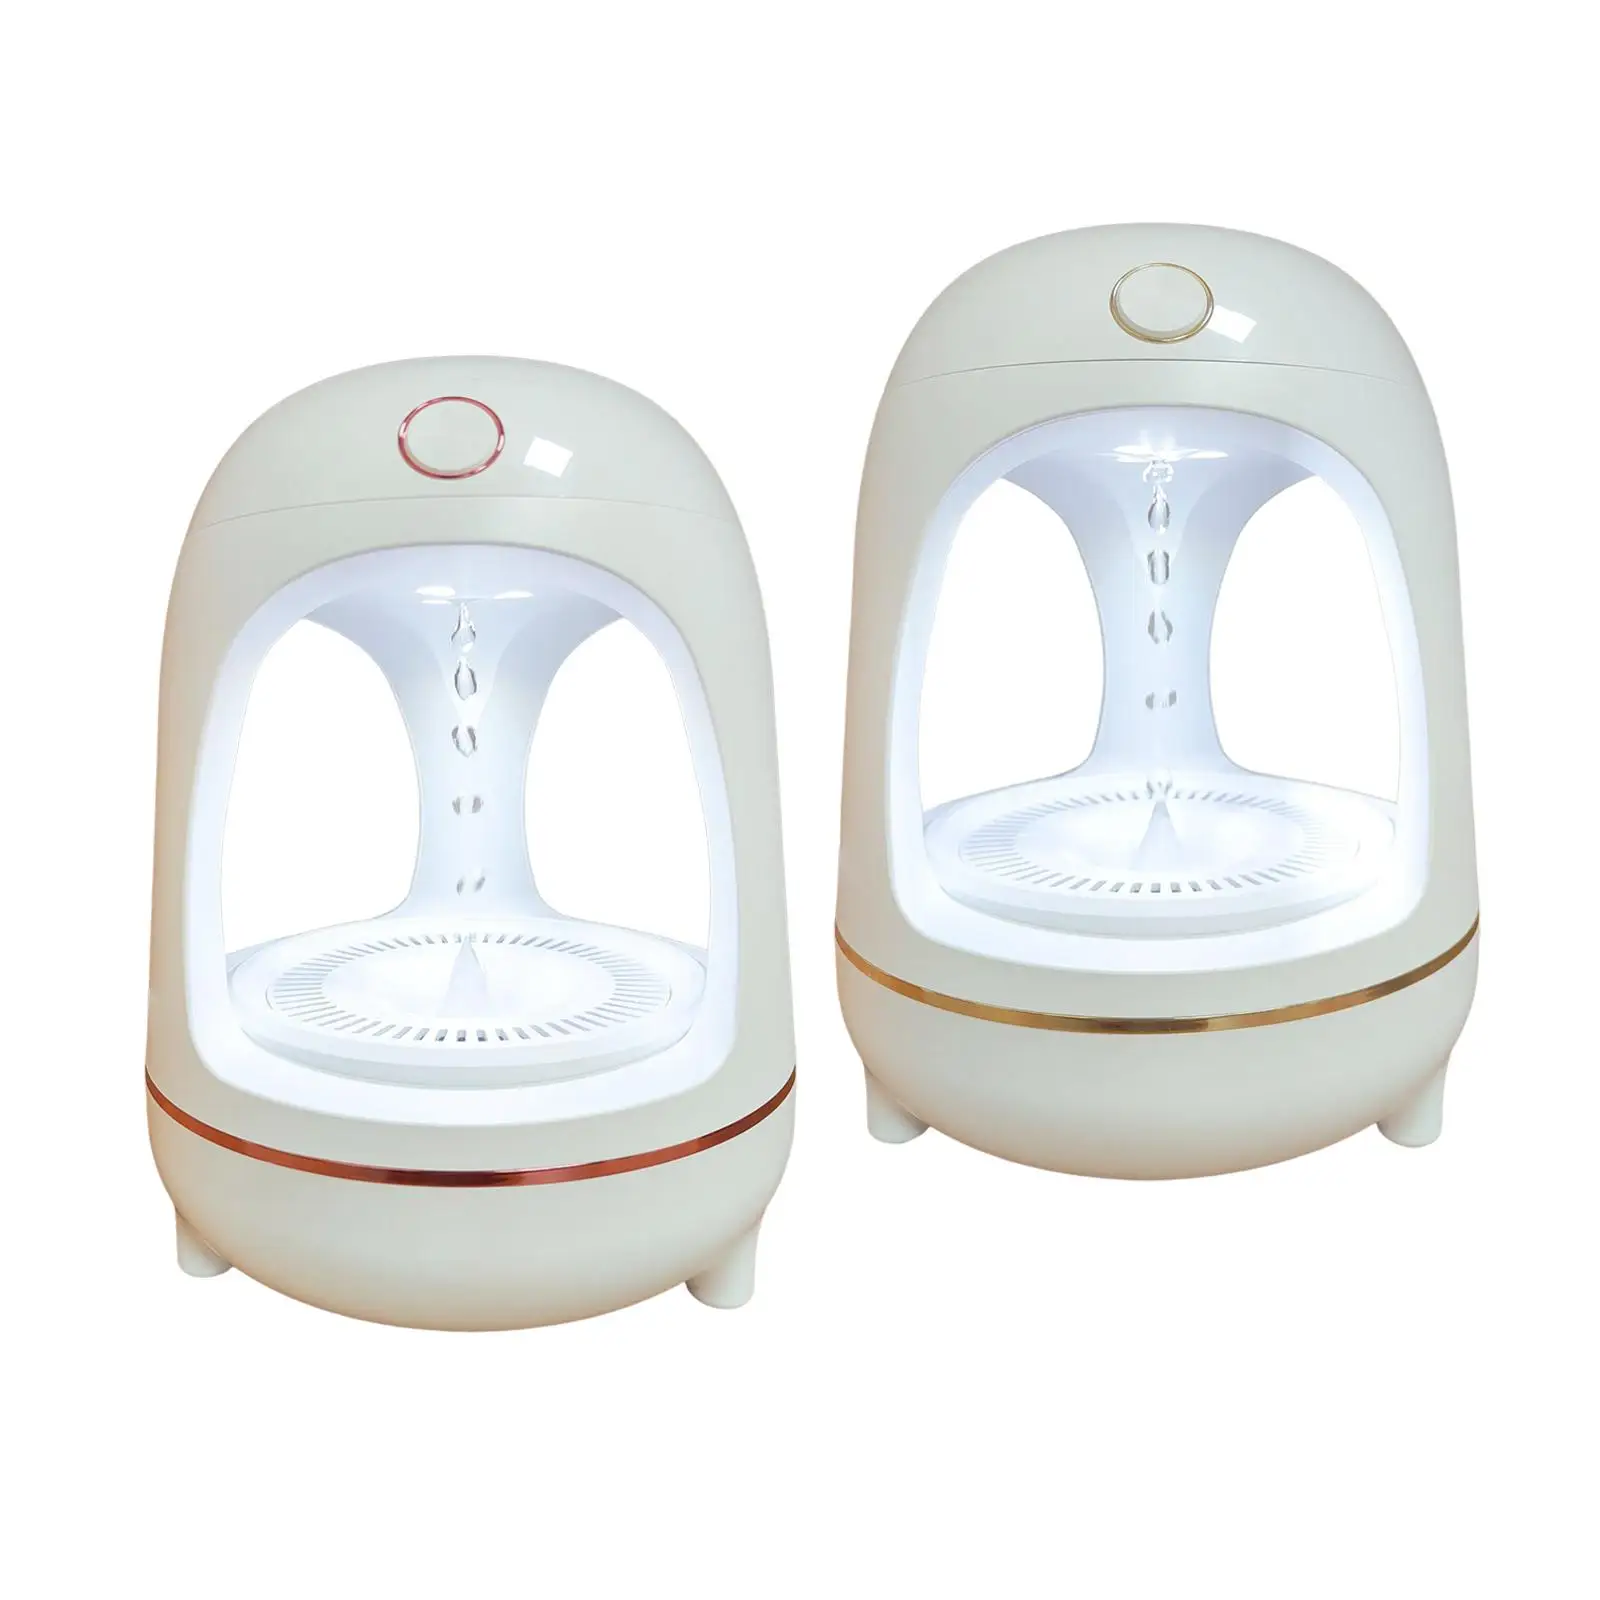 Personal Desktop Humidifier Antigravity Water Droplet Countercurrent Quiet 700ml USB for Office Bedroom Nursery Home Indoor